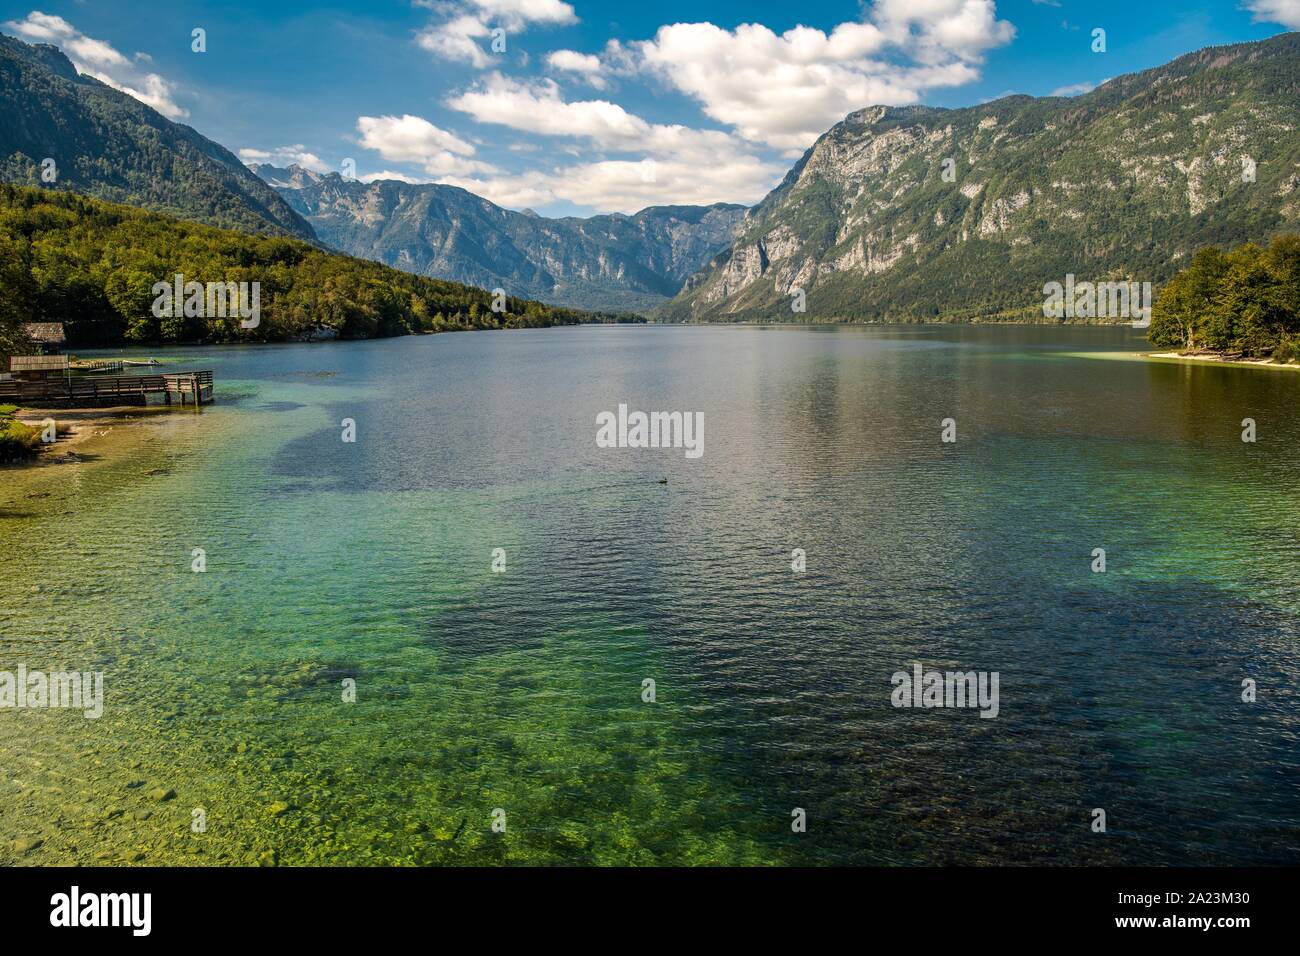 Malerische Lake Bohinj in Slowenien. Herbst am See. Bohinj Tal der Julischen Alpen. Obere Kraina und Teil des Nationalparks Triglav Par Stockfoto